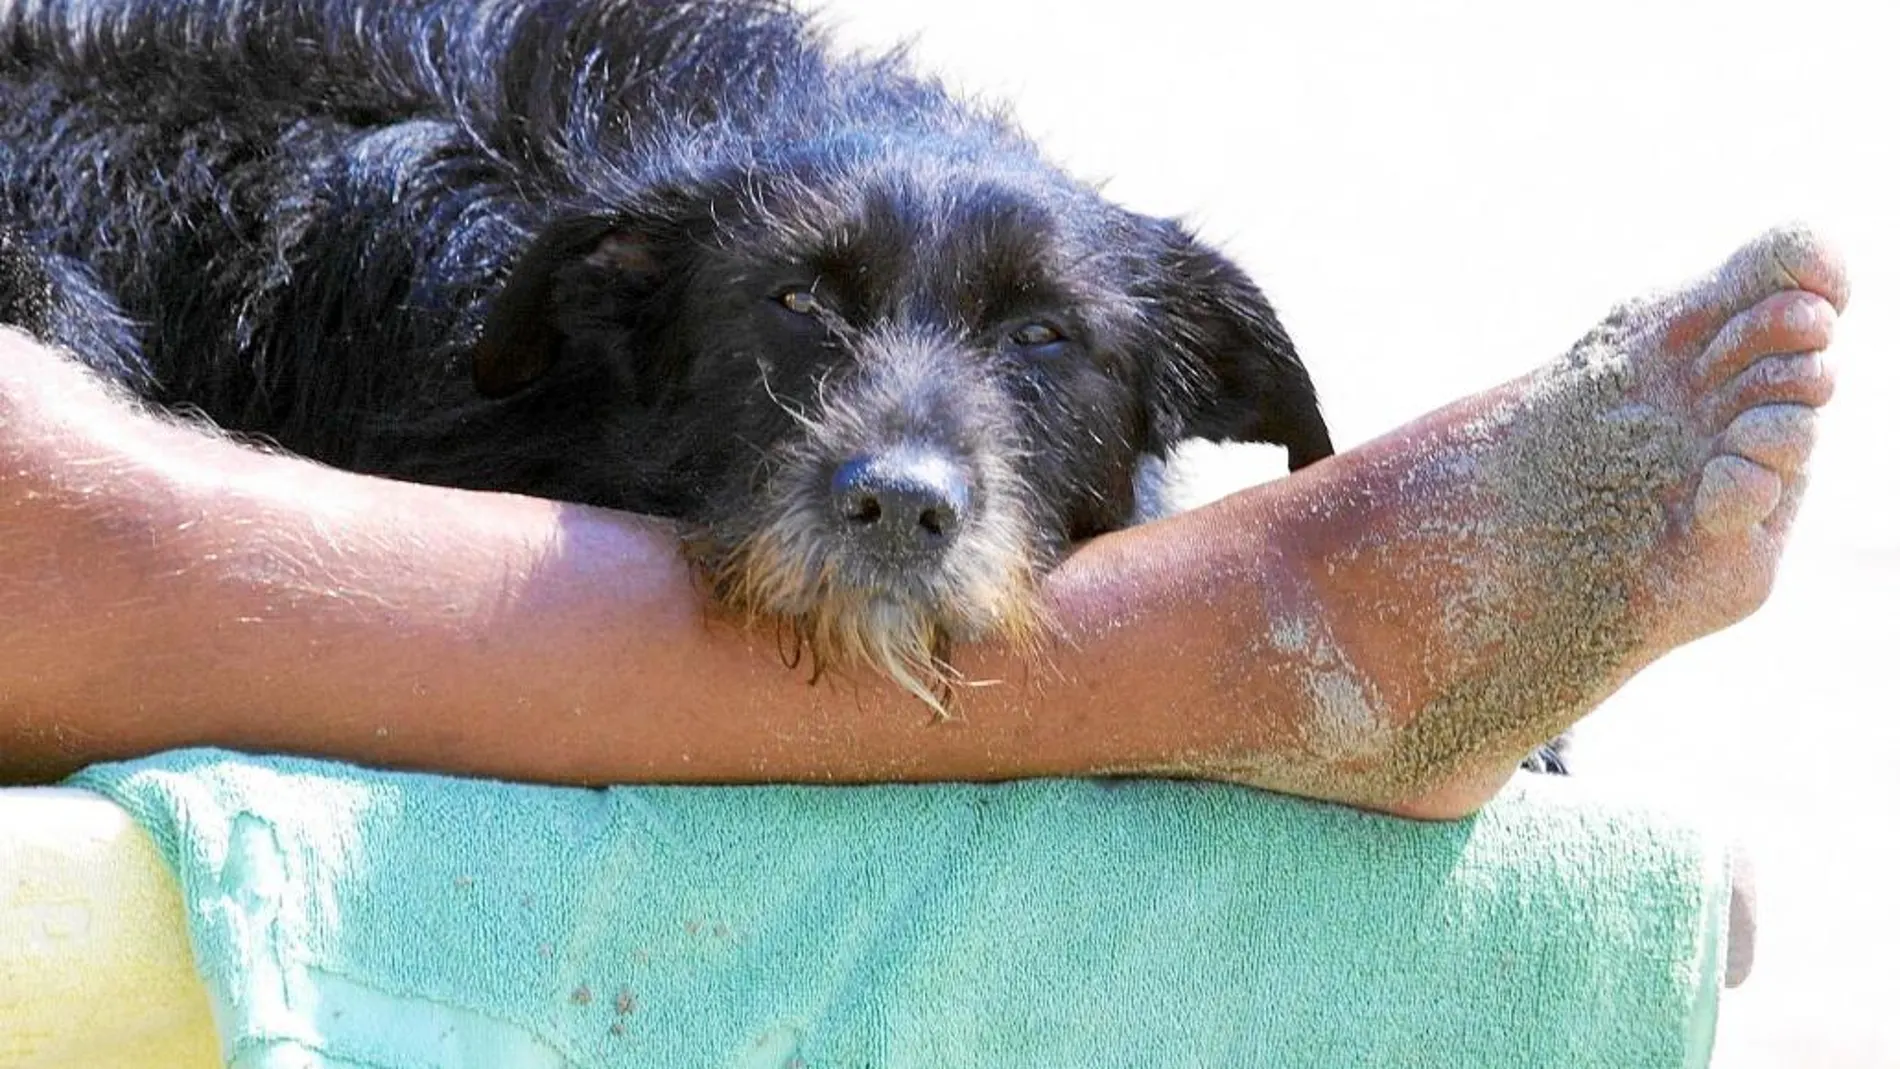 Algunas playas de España sí permiten el acceso de perros junto a sus dueños